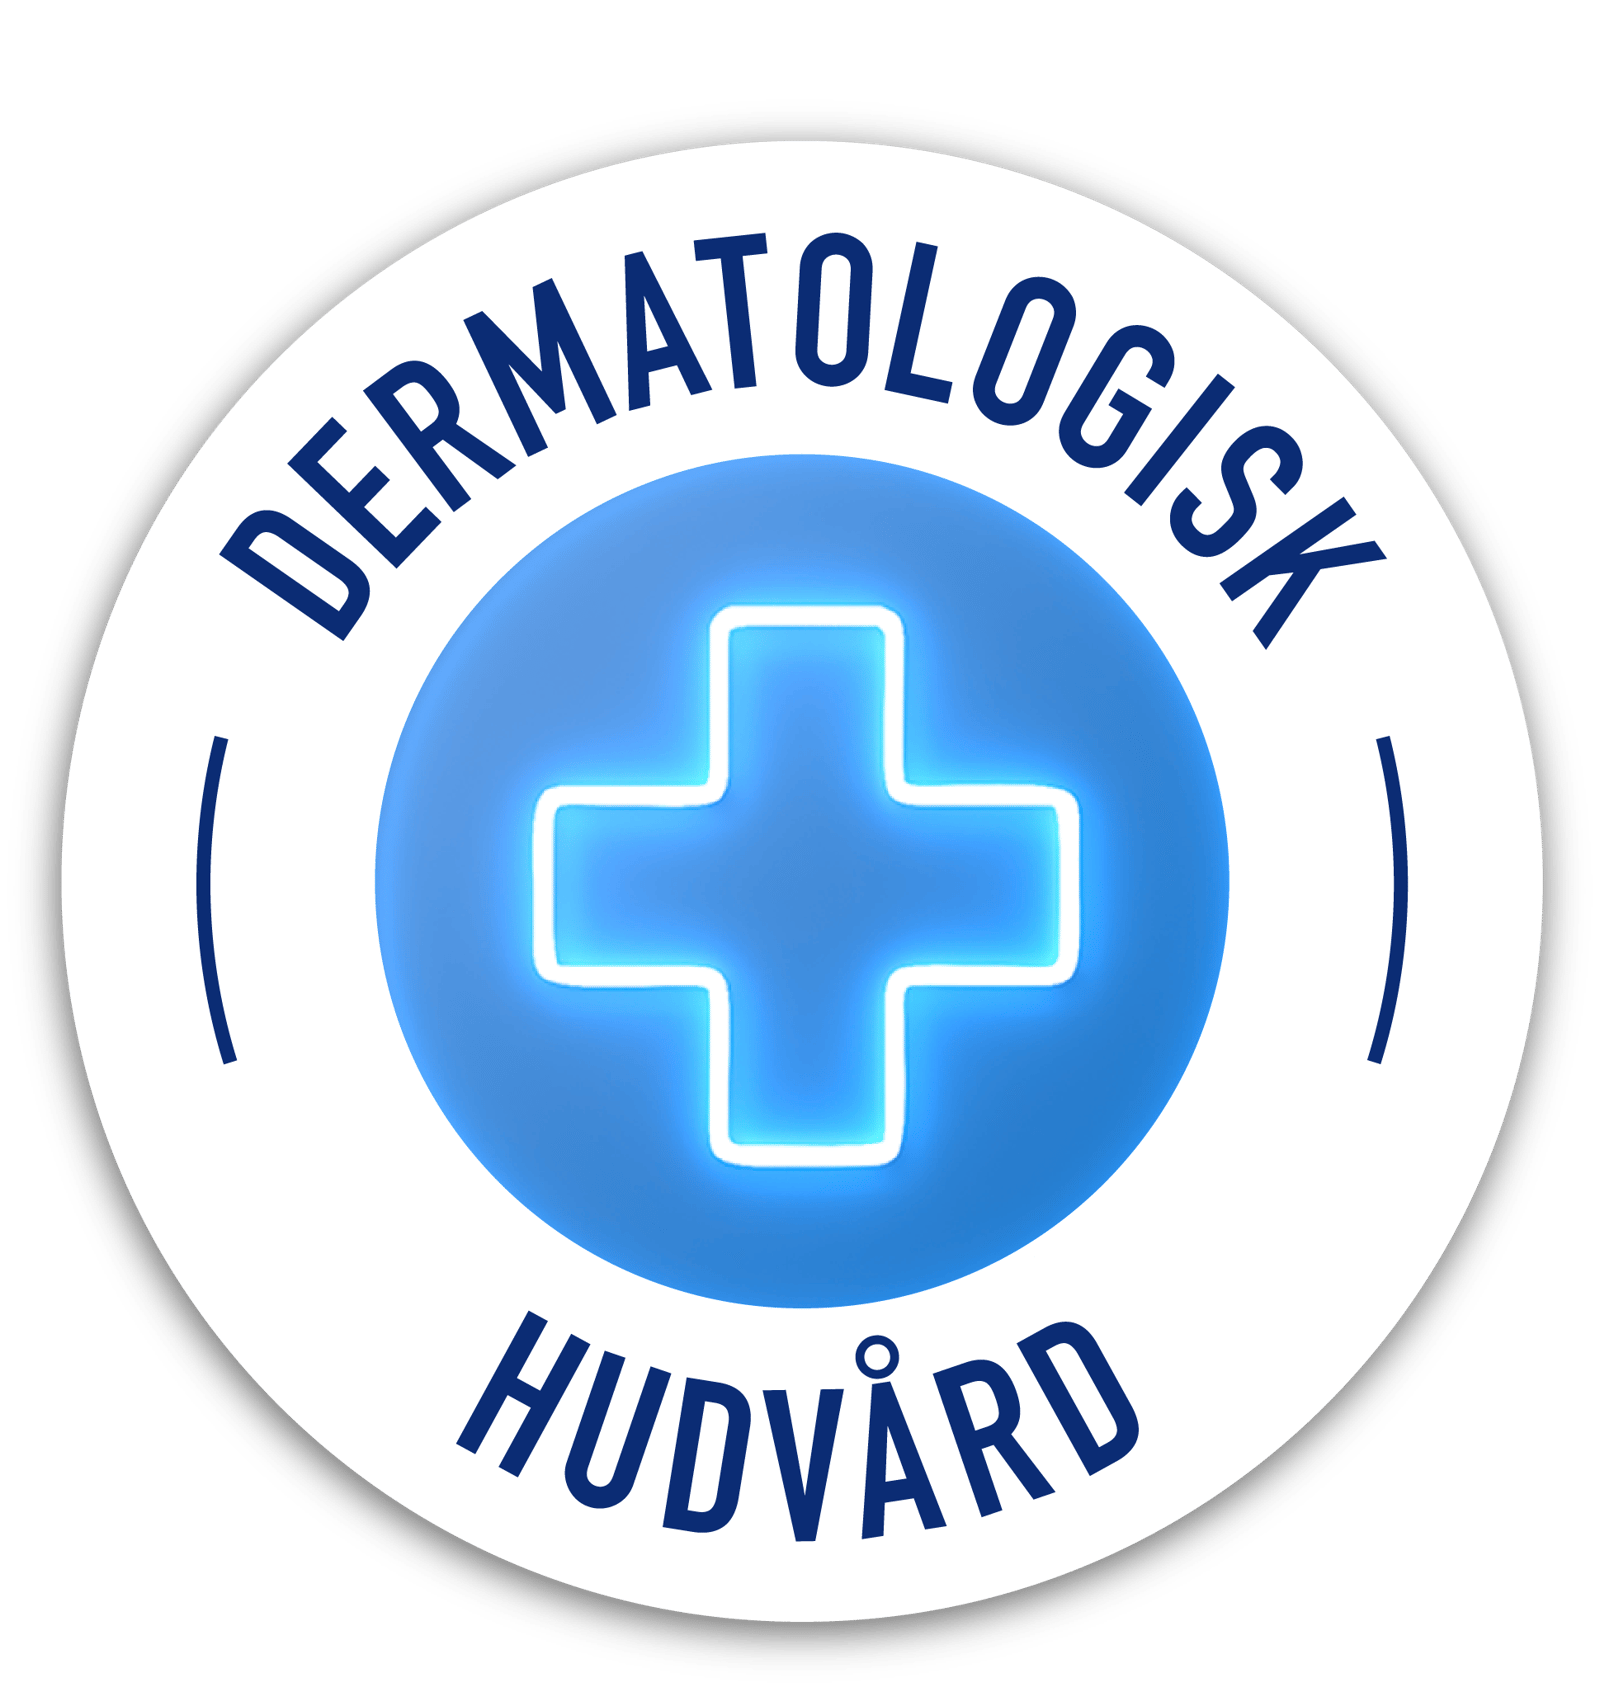 Dermatologisk hudvård